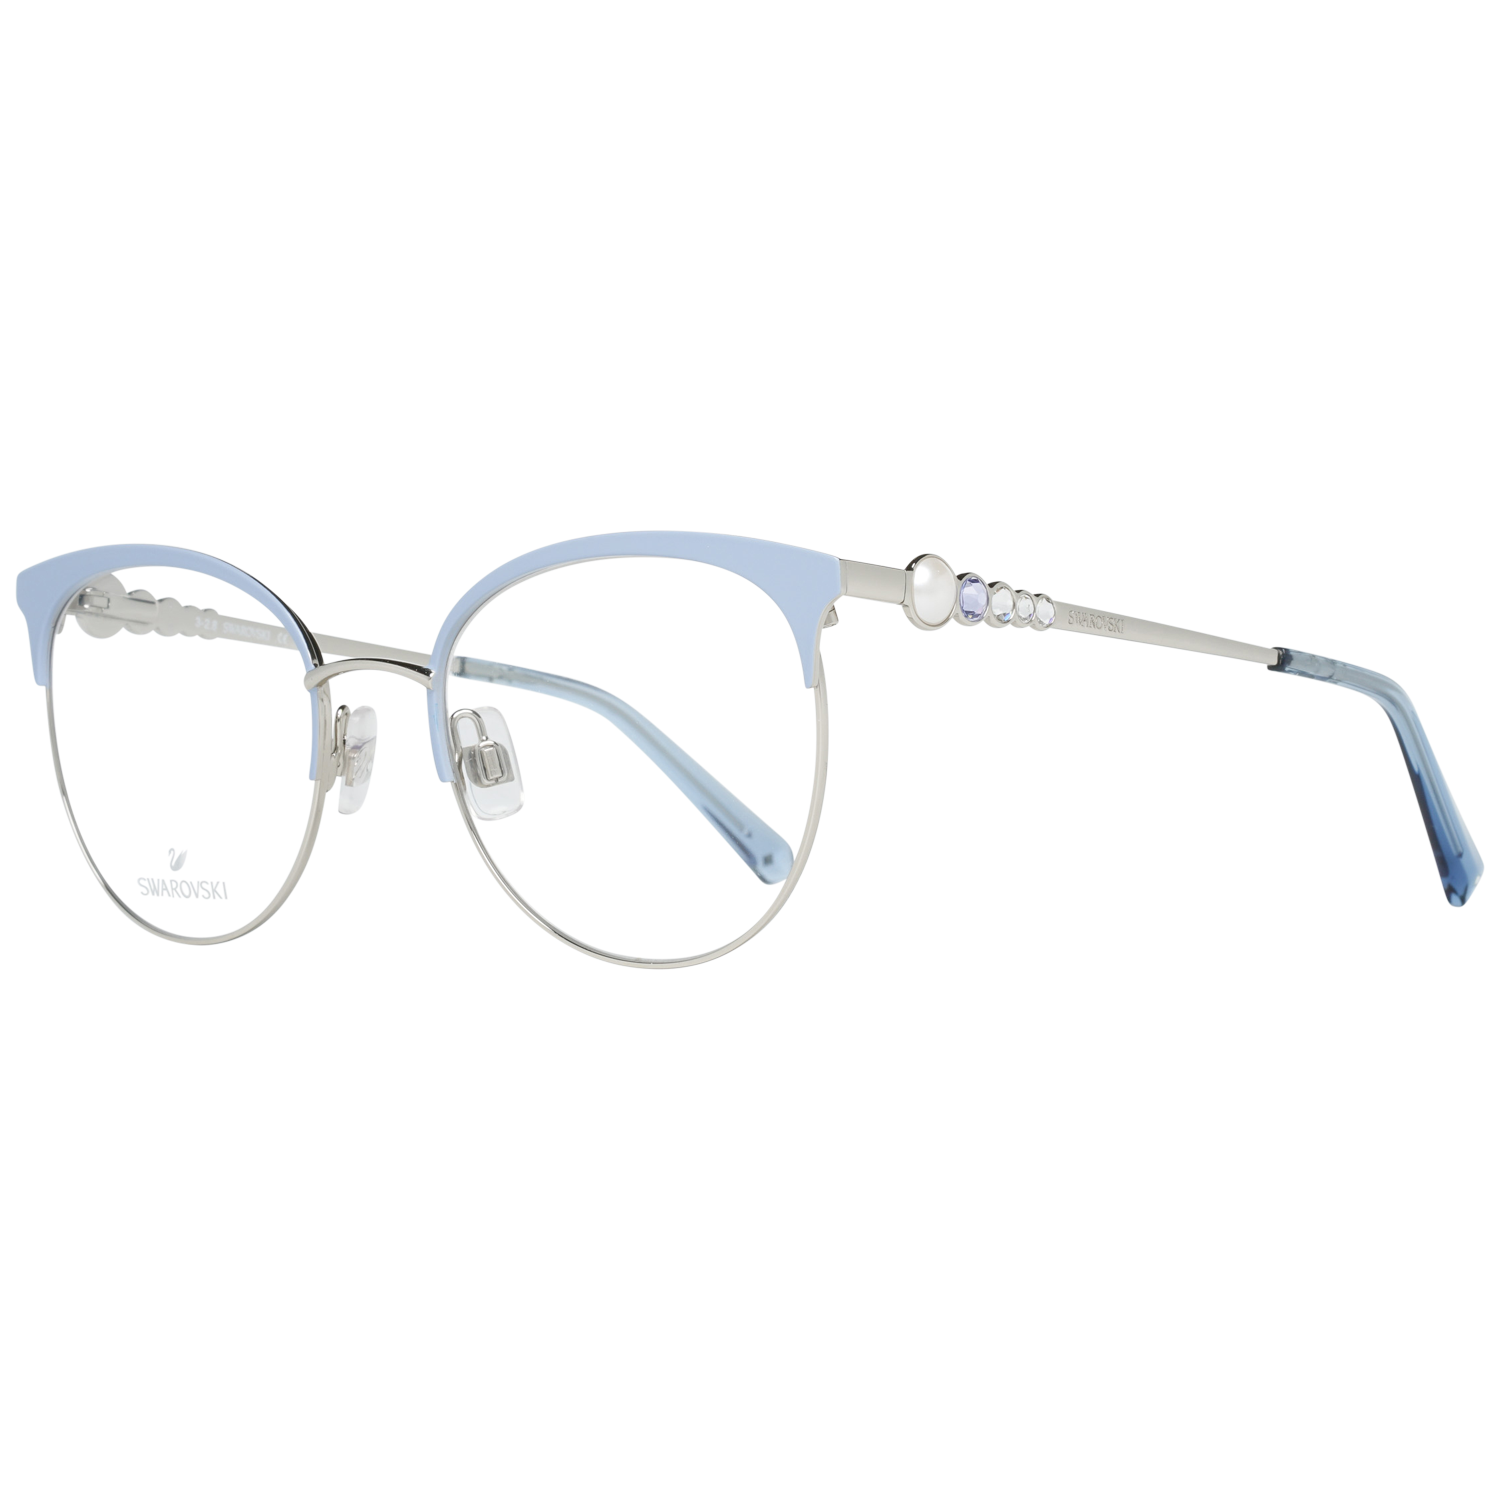 Swarovski Frames Swarovski Women Glasses Optical Frame SK5275 B16 51 Eyeglasses Eyewear UK USA Australia 